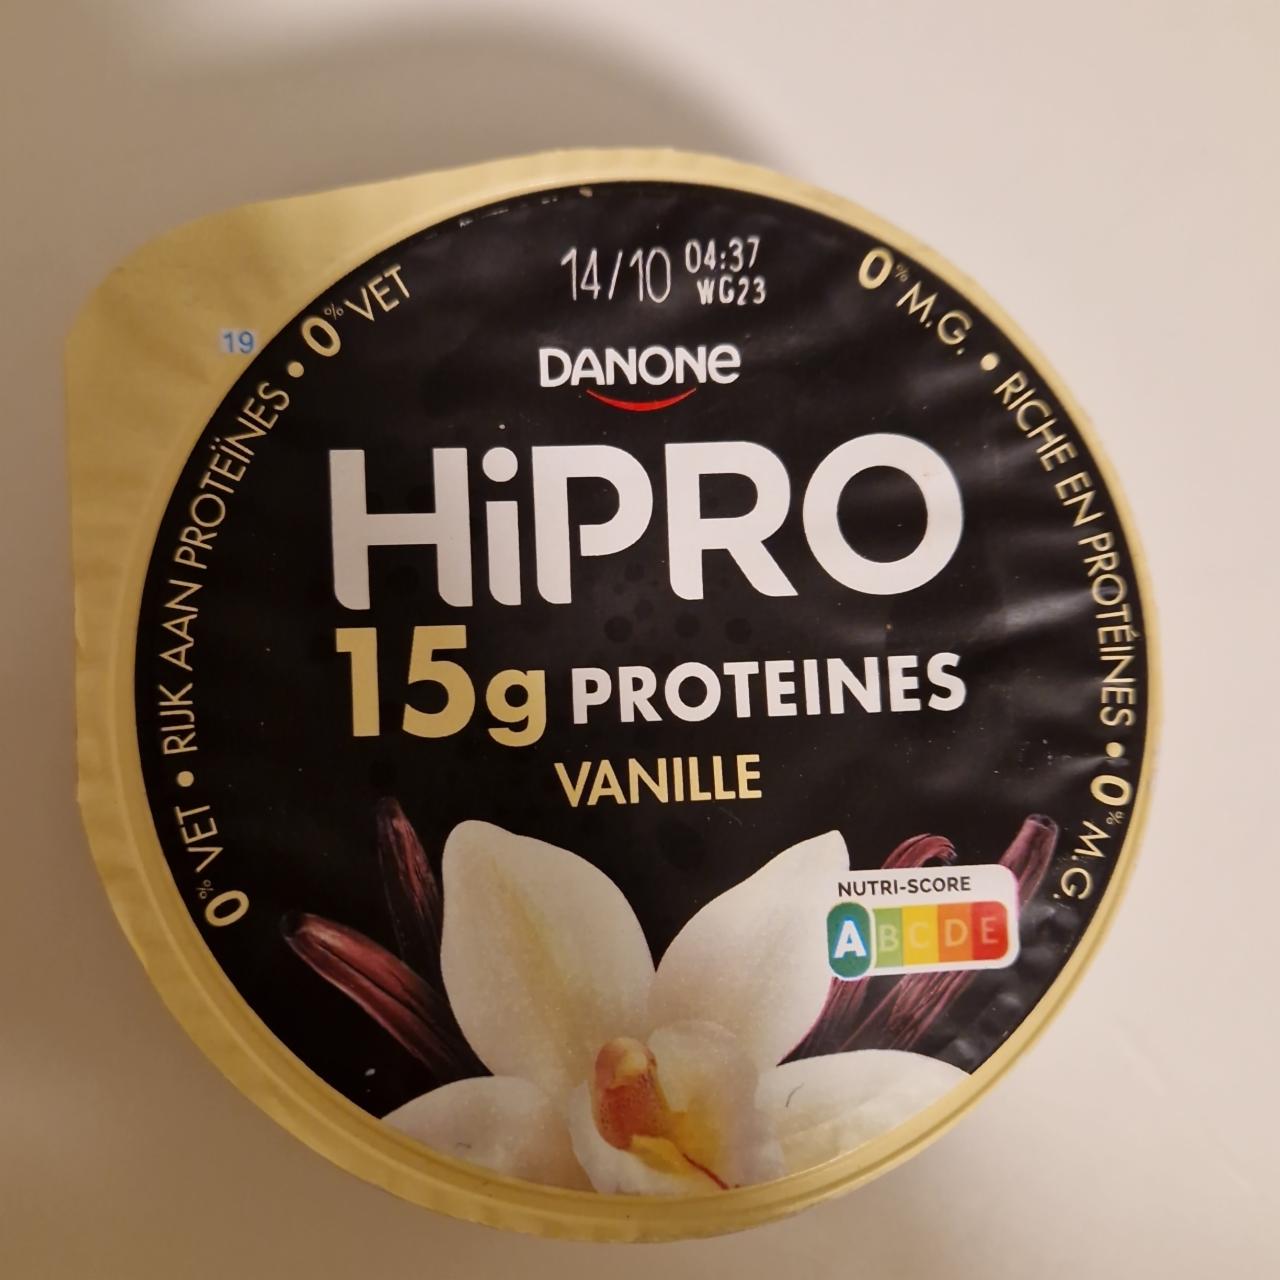 Фото - proteines vanilla flavour hipro Danone